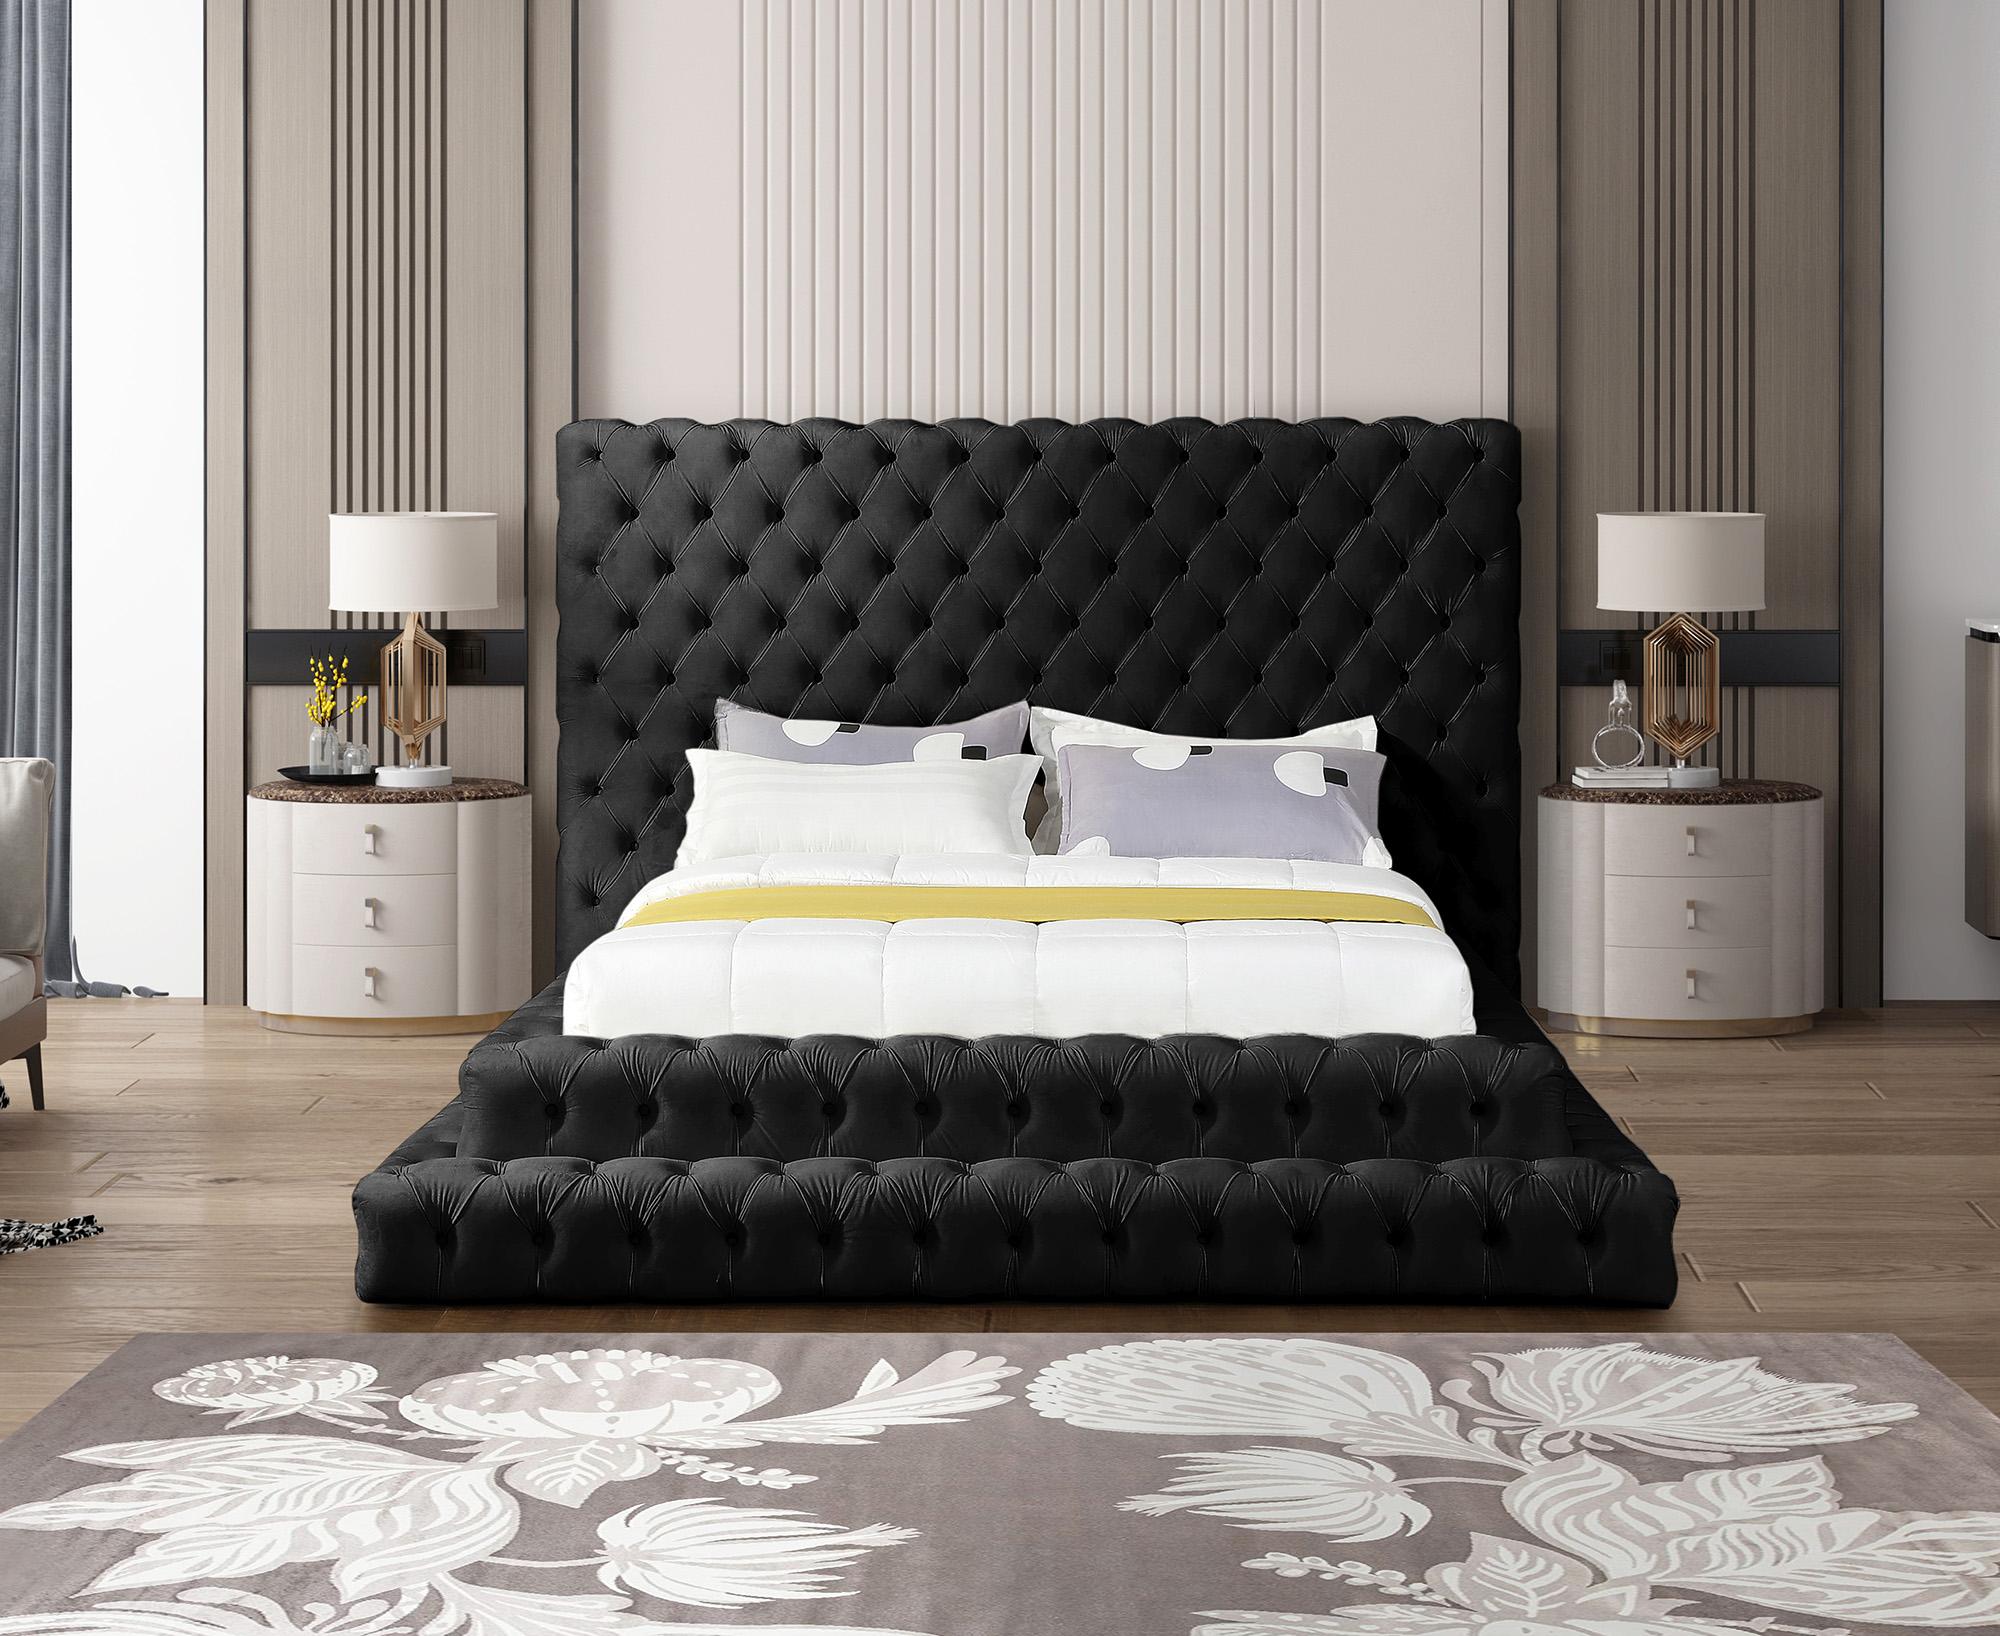 

    
RevelBlack-K Meridian Furniture Platform Bed
